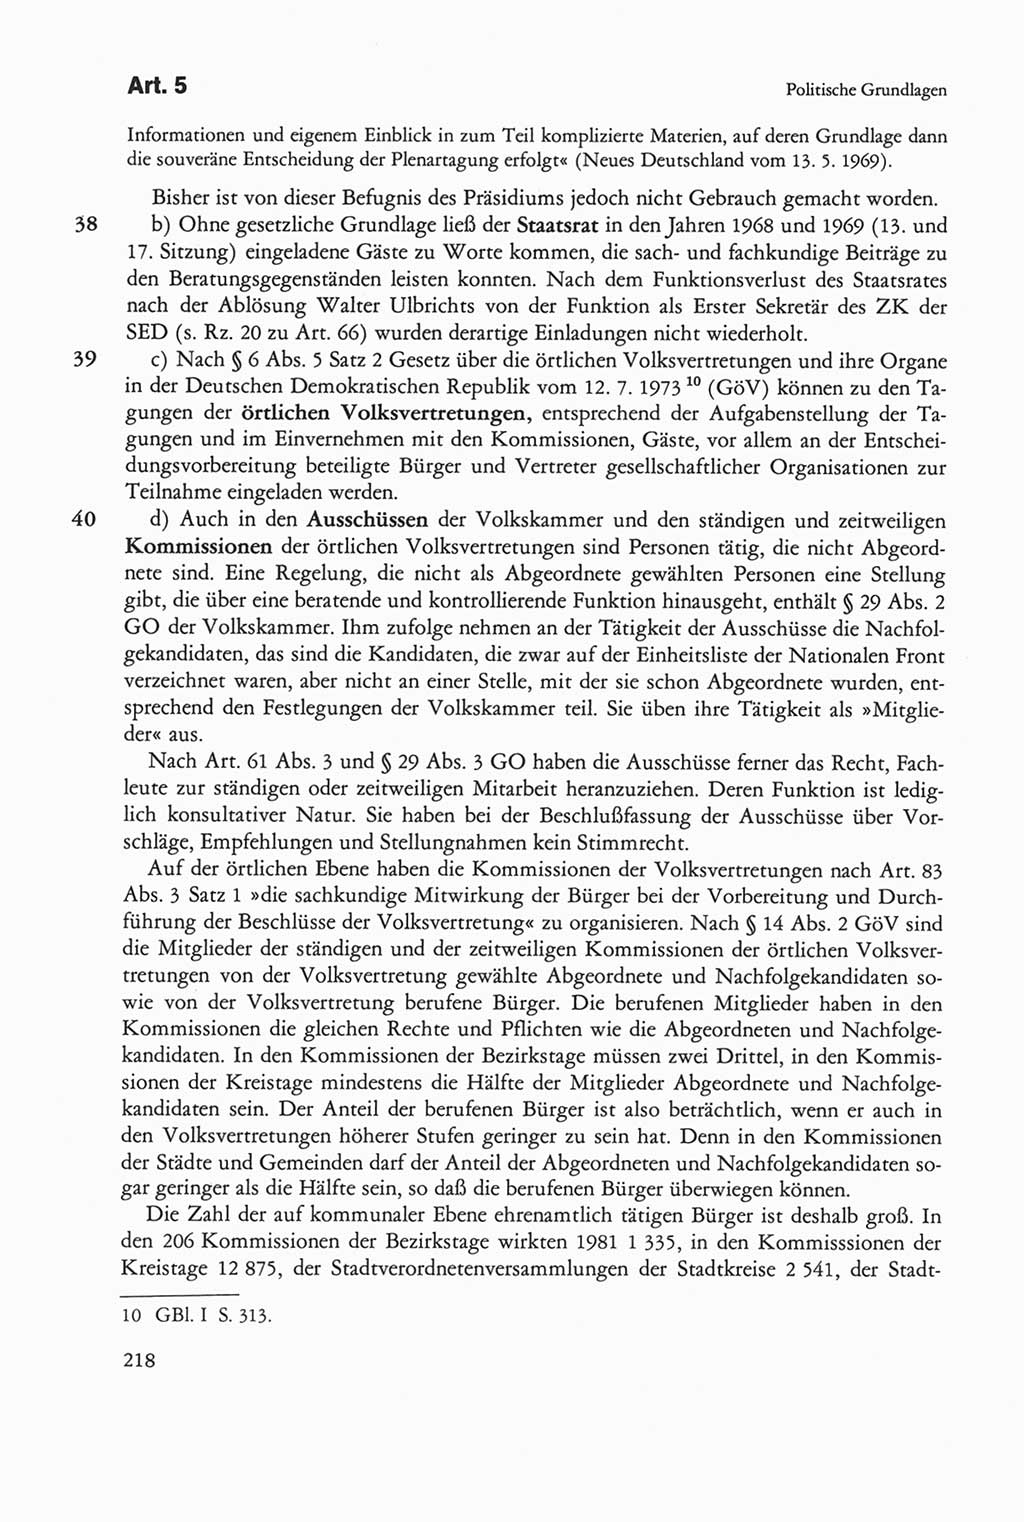 Die sozialistische Verfassung der Deutschen Demokratischen Republik (DDR), Kommentar 1982, Seite 218 (Soz. Verf. DDR Komm. 1982, S. 218)